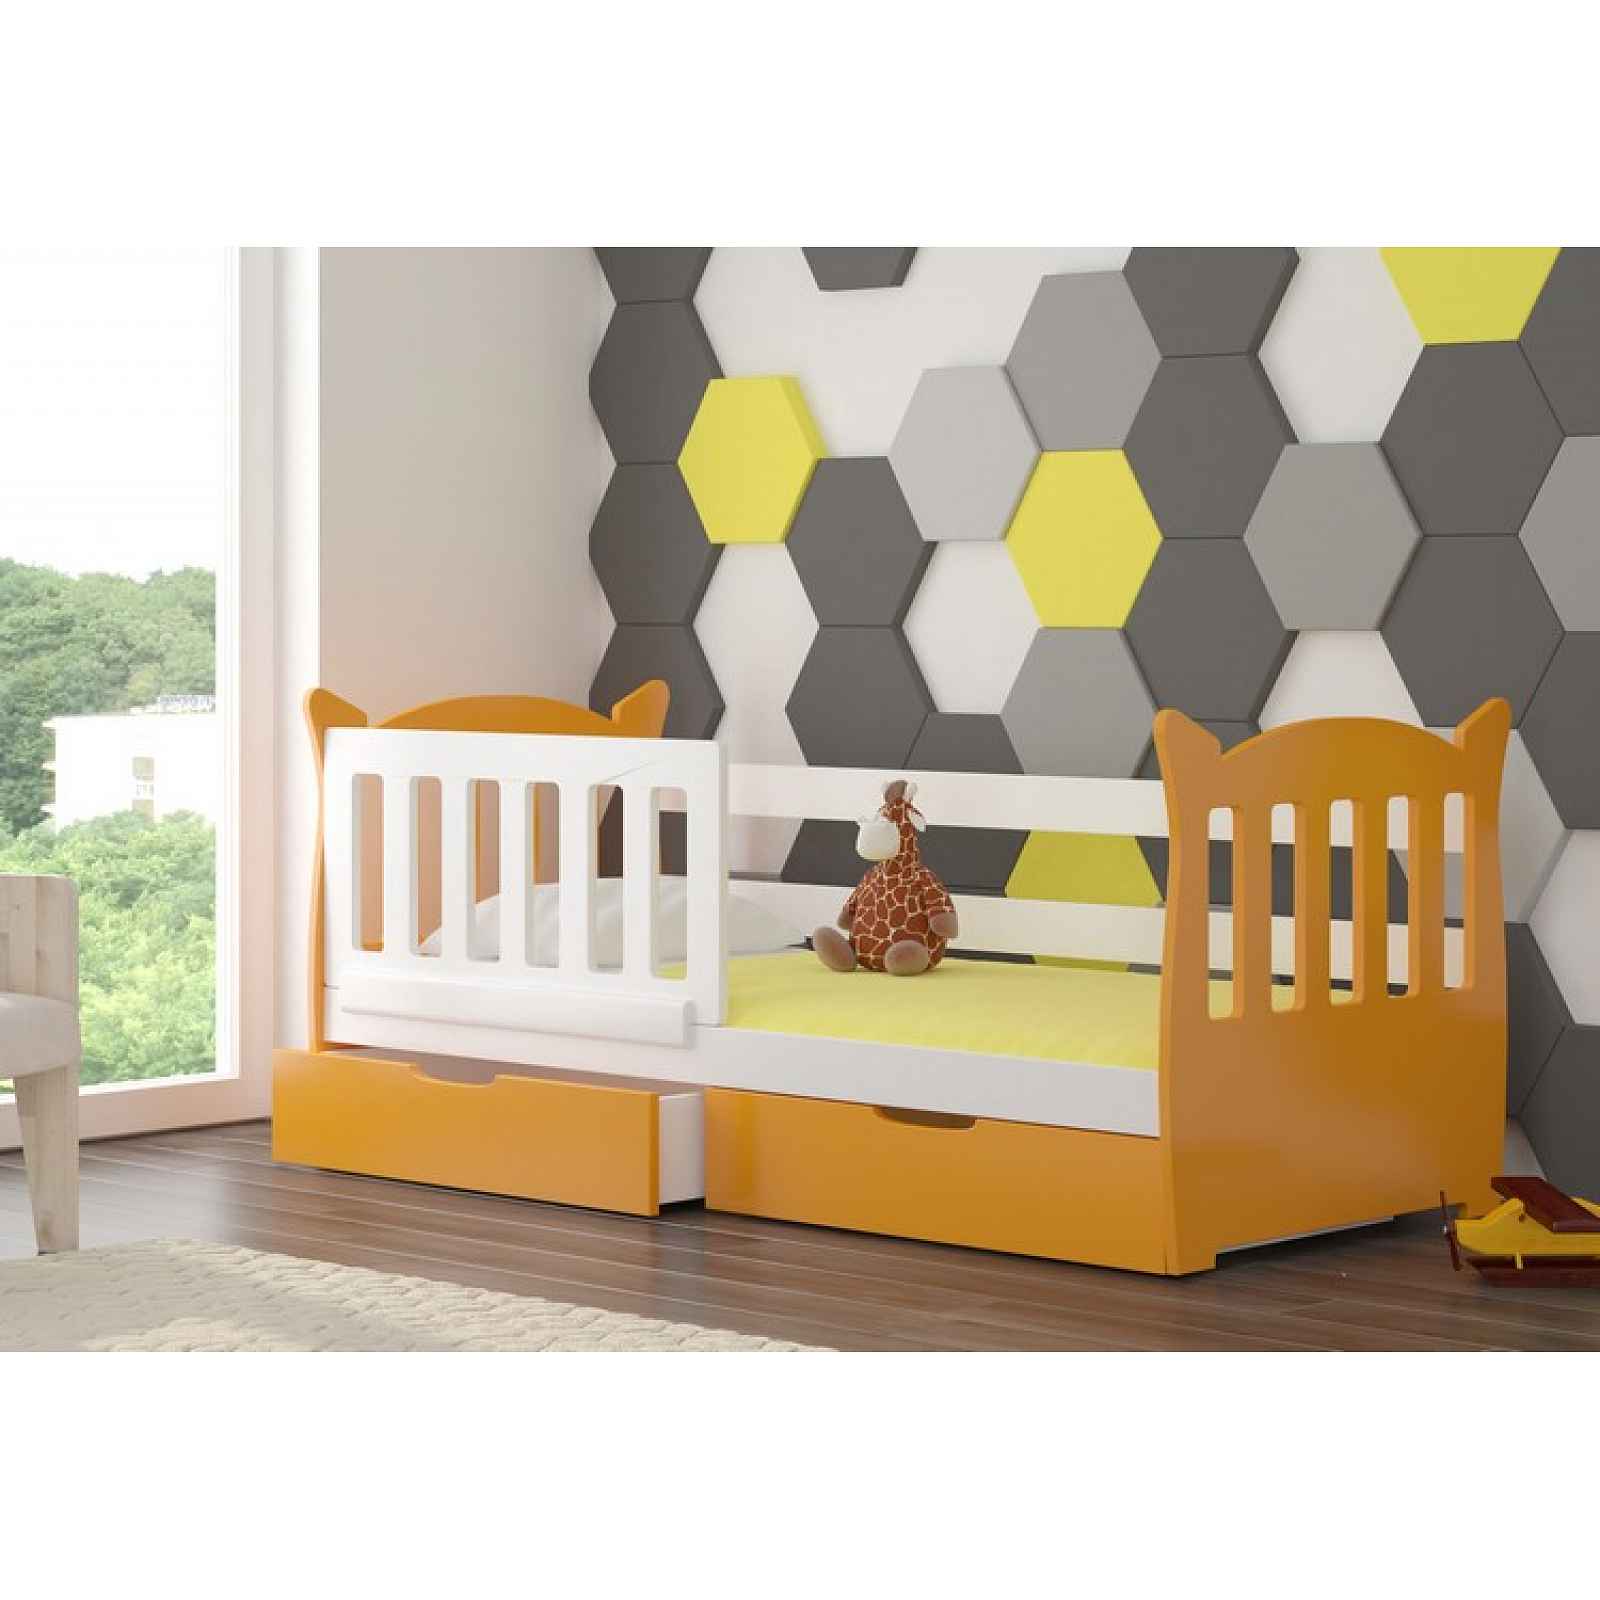 Dětská postel Lekra, bílá/oranžová + matrace ZDARMA! HELCEL